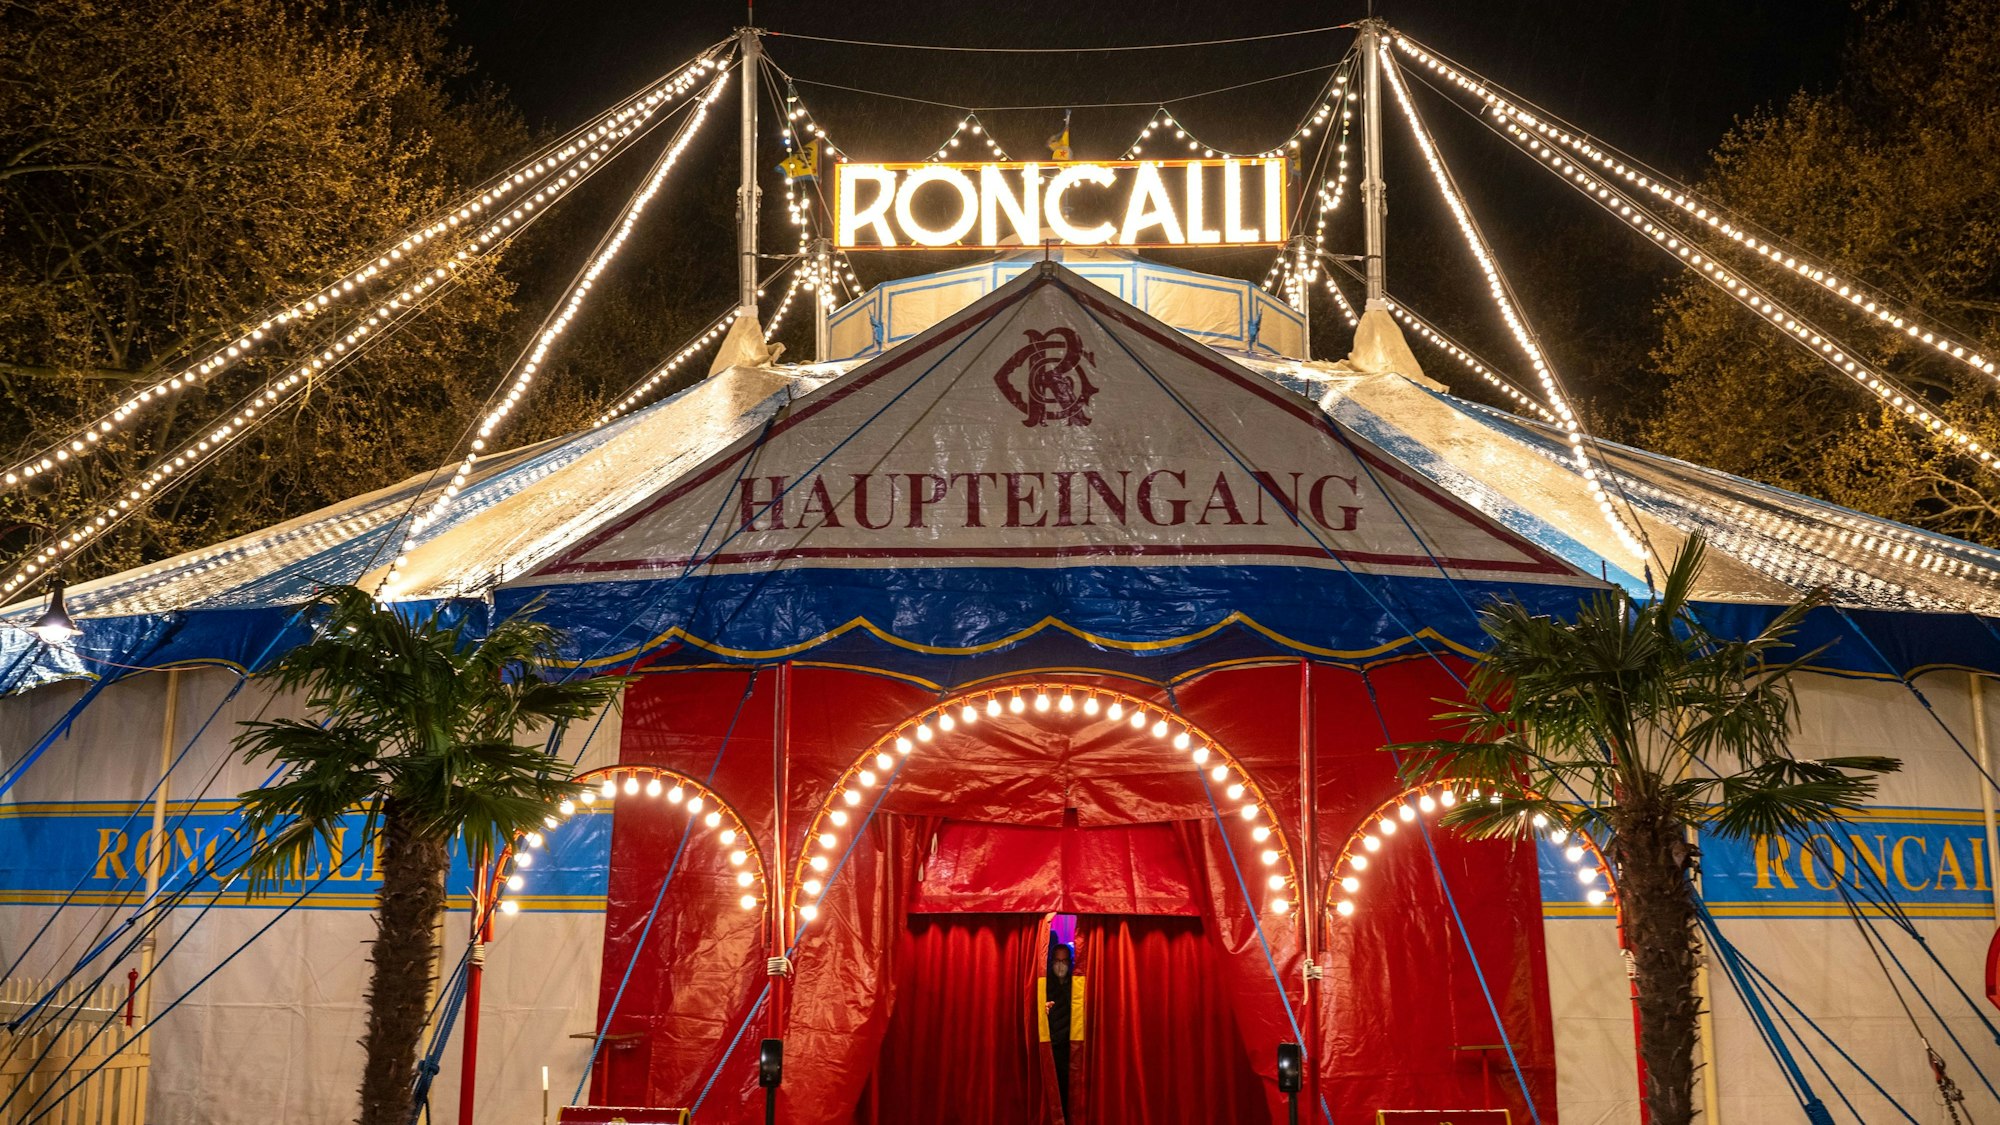 Das Roncalli-Zirkuszelt mit beleuchtetem Schriftzug am Abend ist zu sehen.